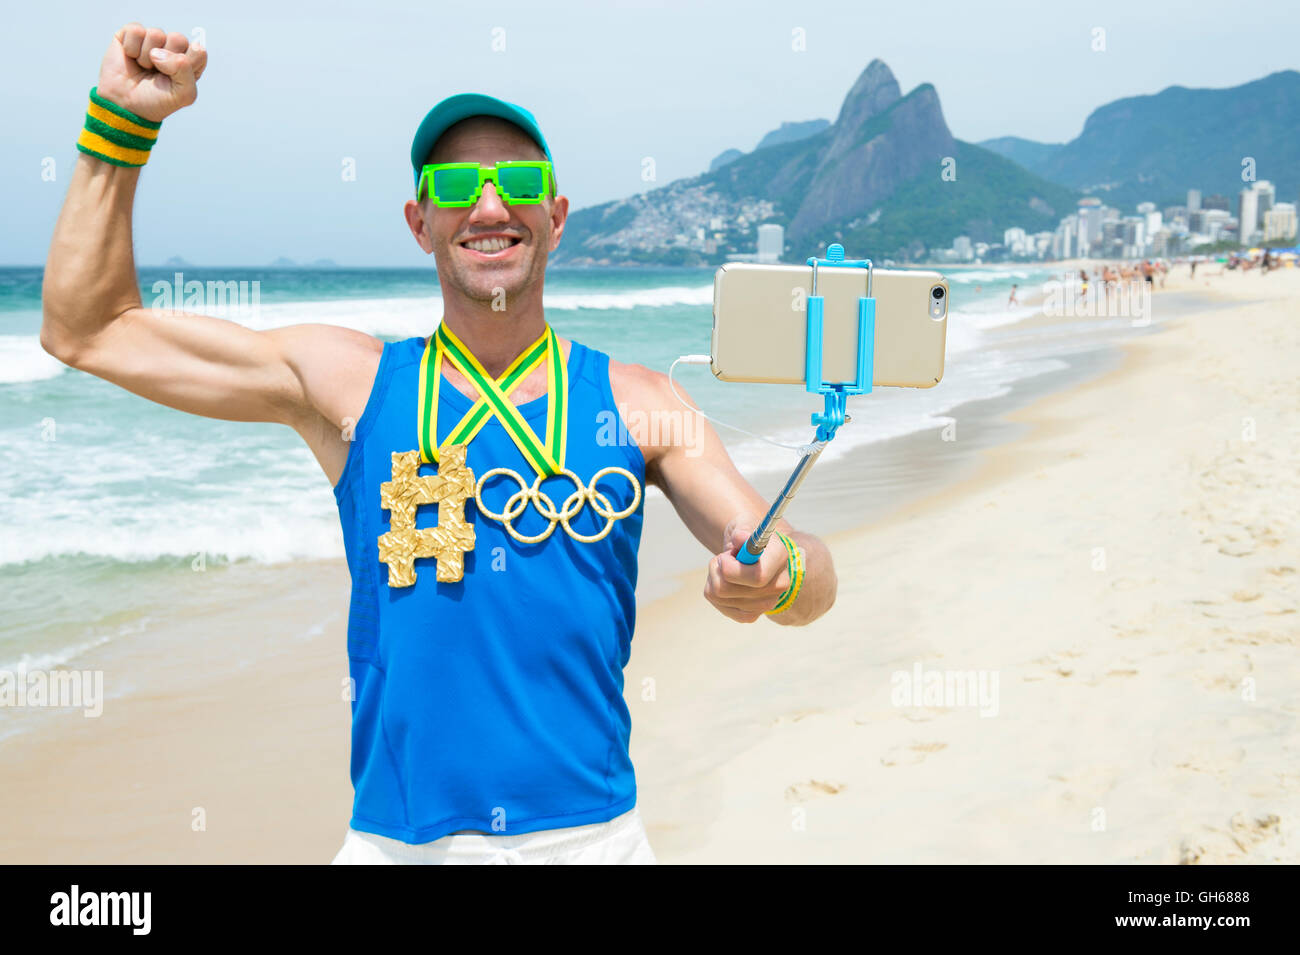 RIO DE JANEIRO - 10. März 2016: Sportler mit Hashtag und Olympischen Ringe gold Medaillen steht unter einem Selfie am Strand von Ipanema. Stockfoto